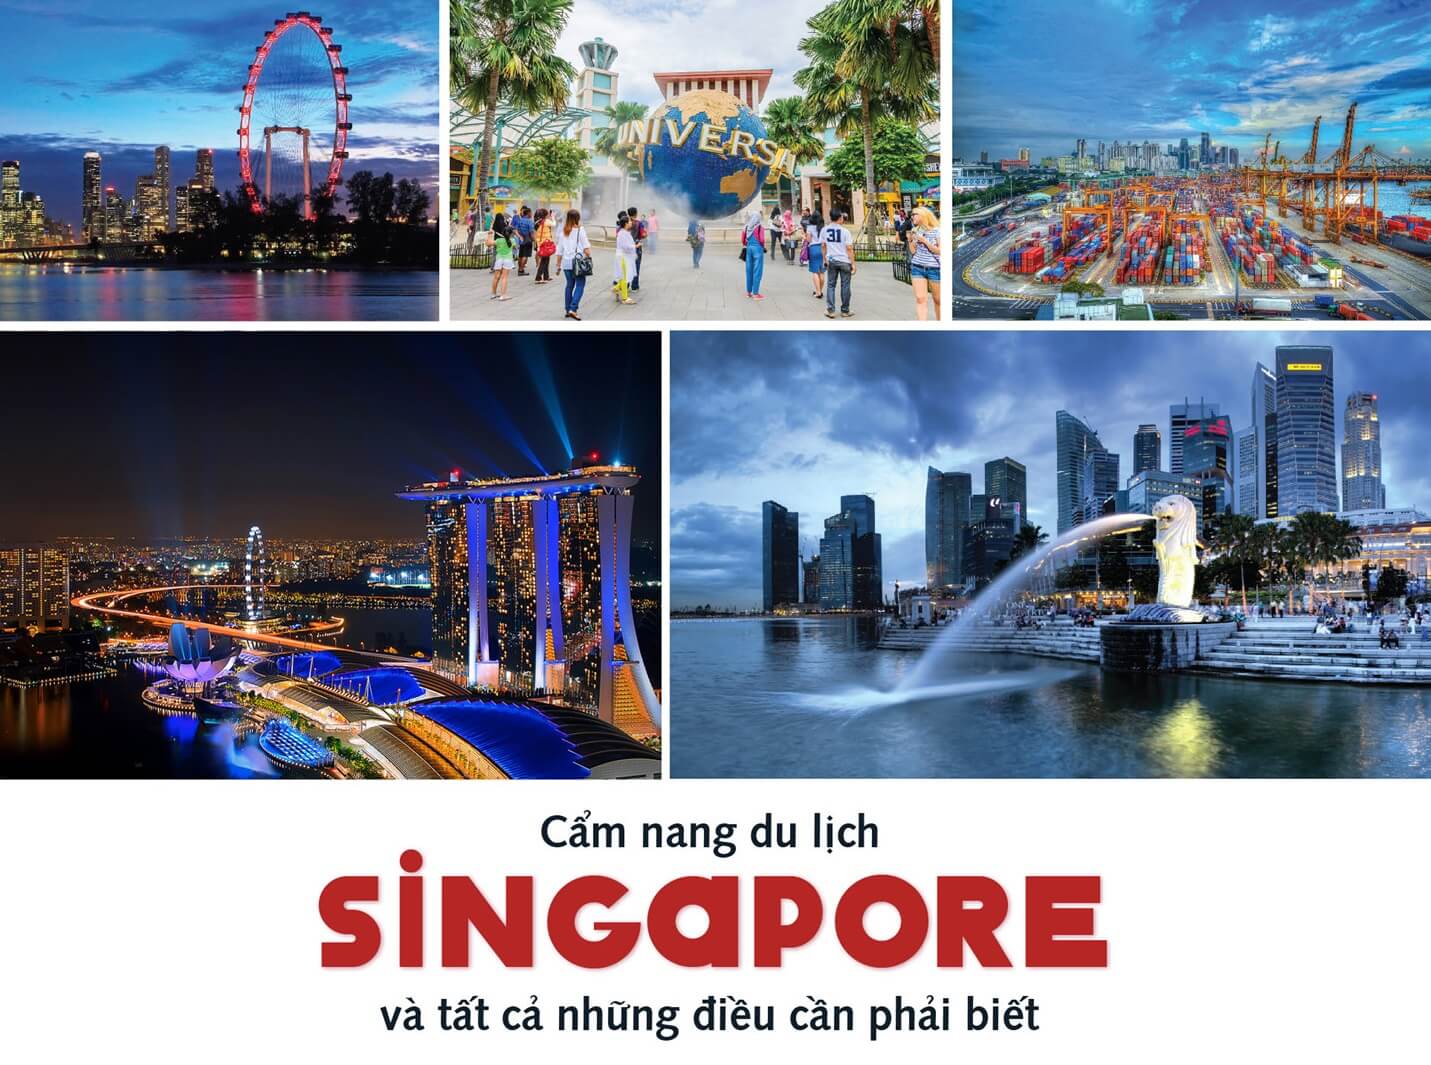 Tiết kiệm tối đa với kinh nghiệm du lịch Singapore từ A-Z